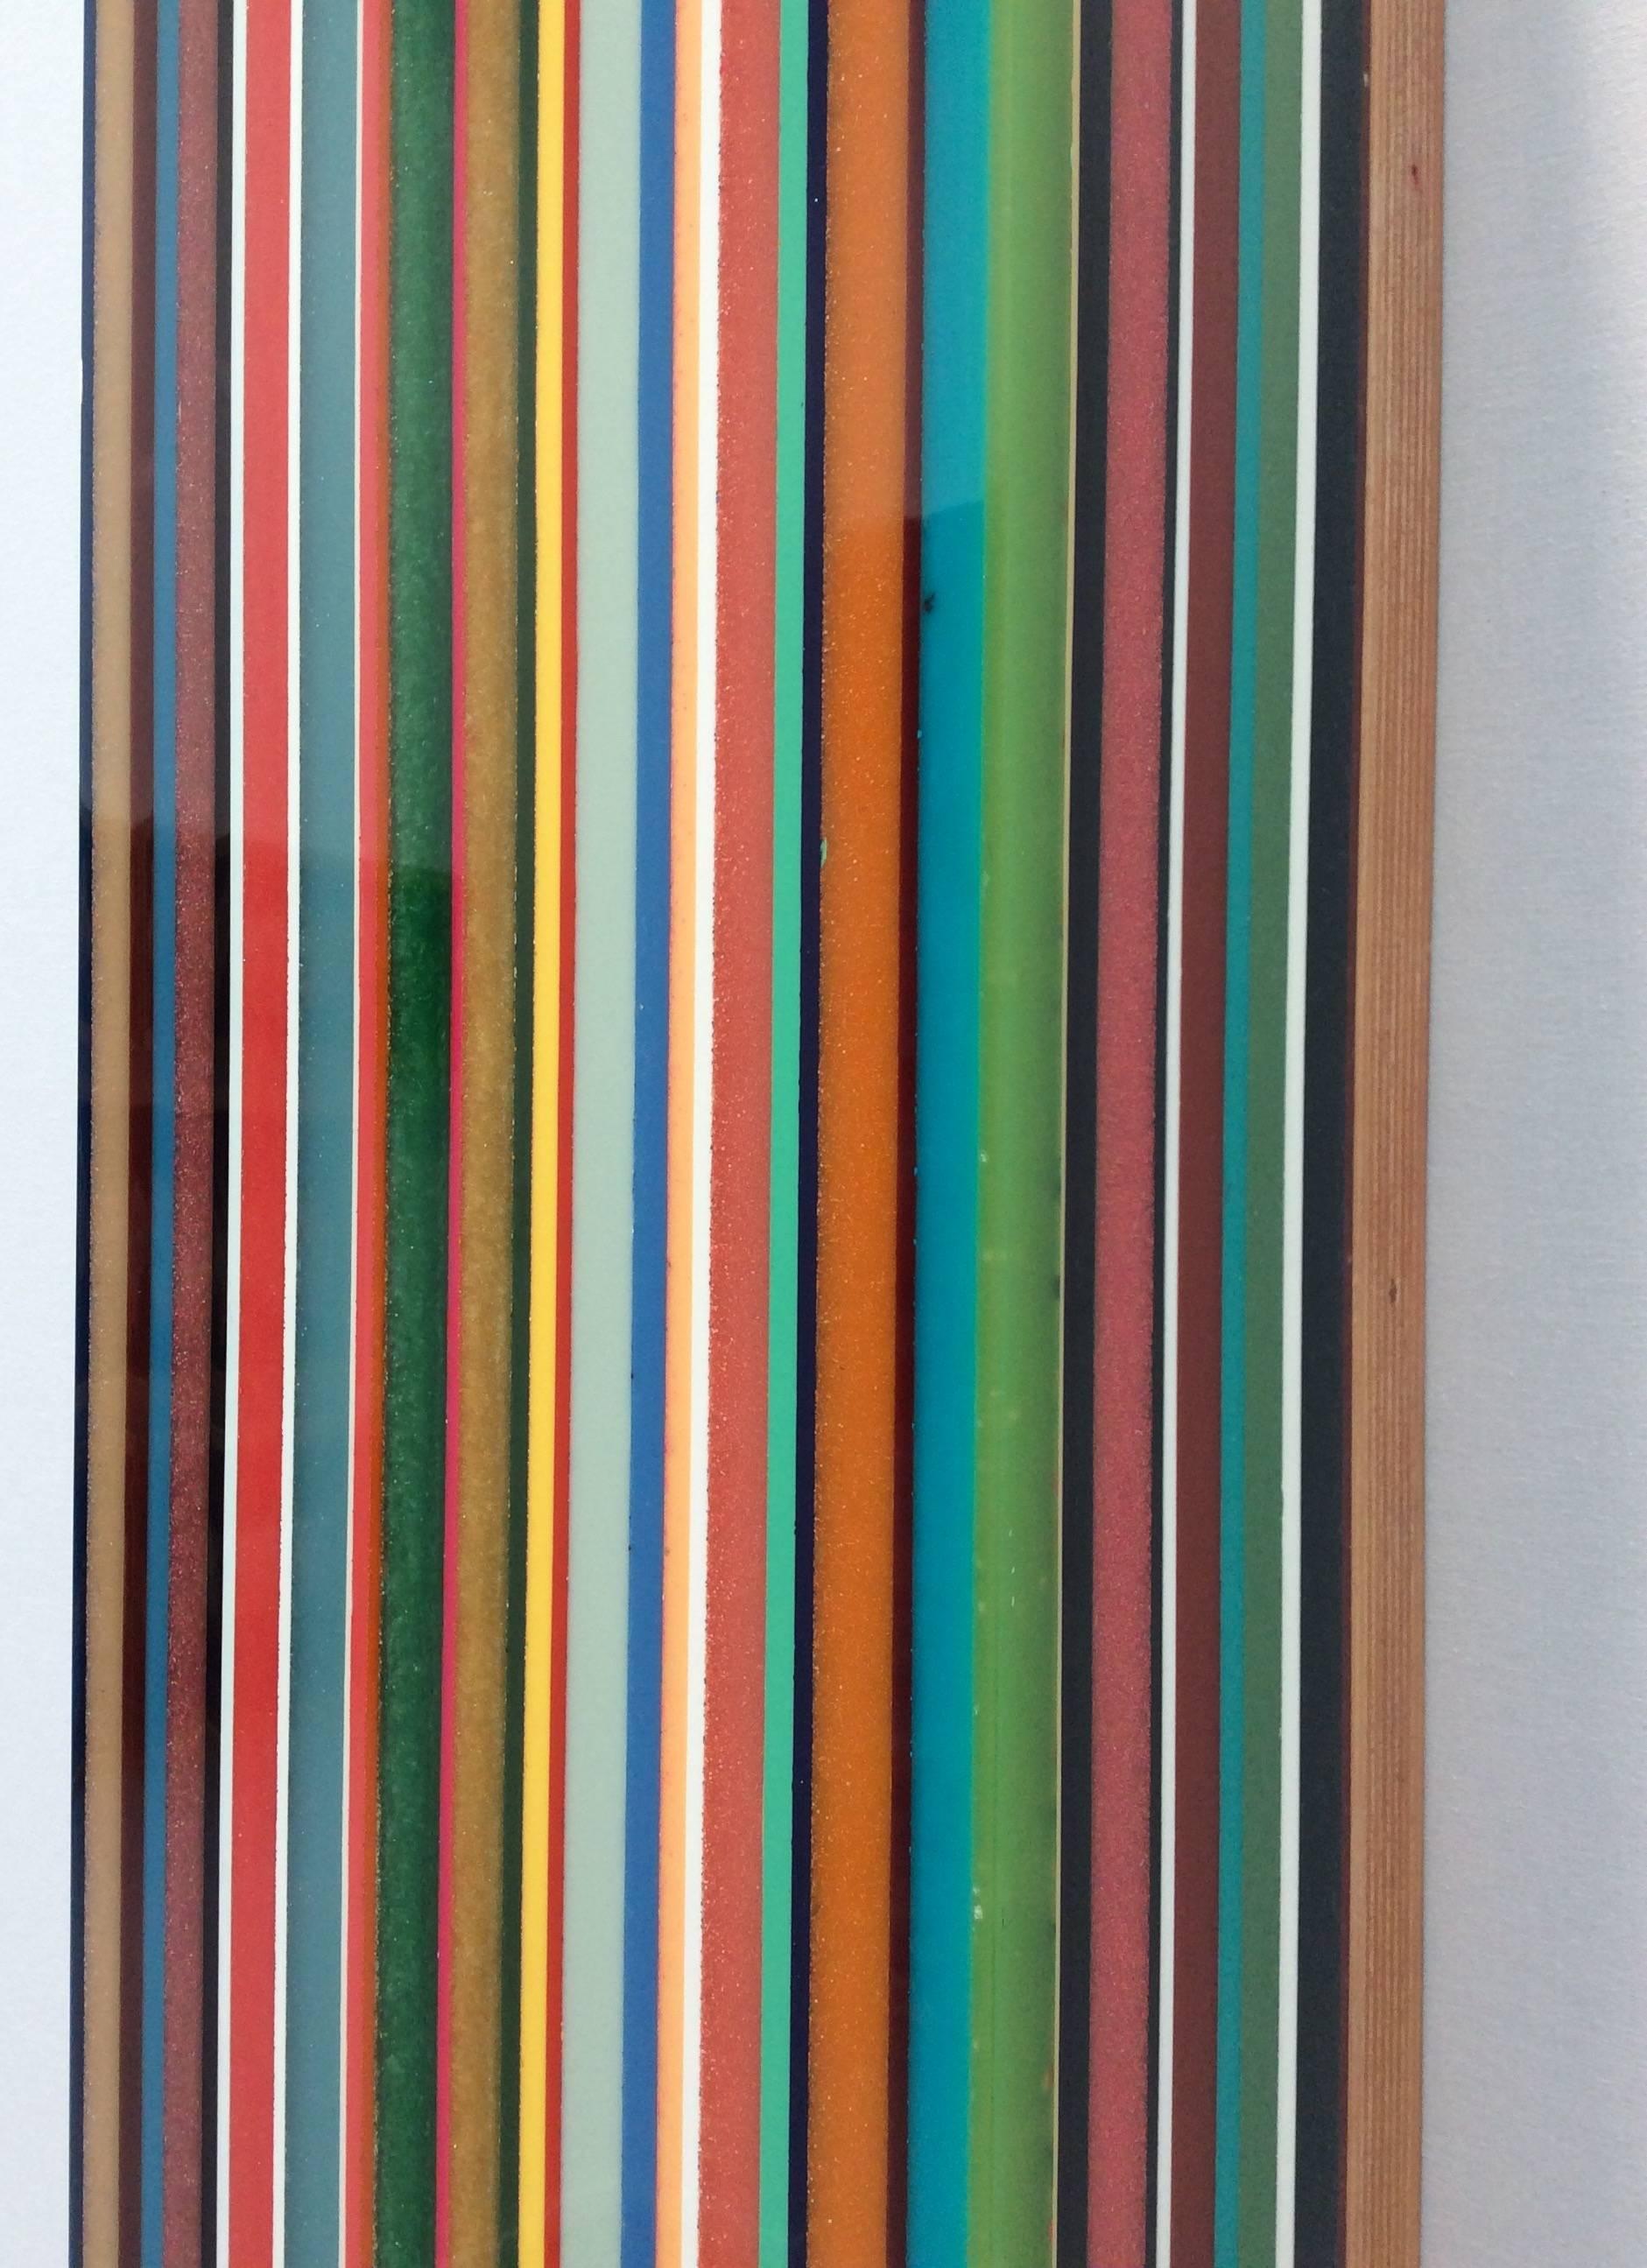 Farbbramme 1 - Brown Abstract Sculpture by Harald Schmitz-Schmelzer